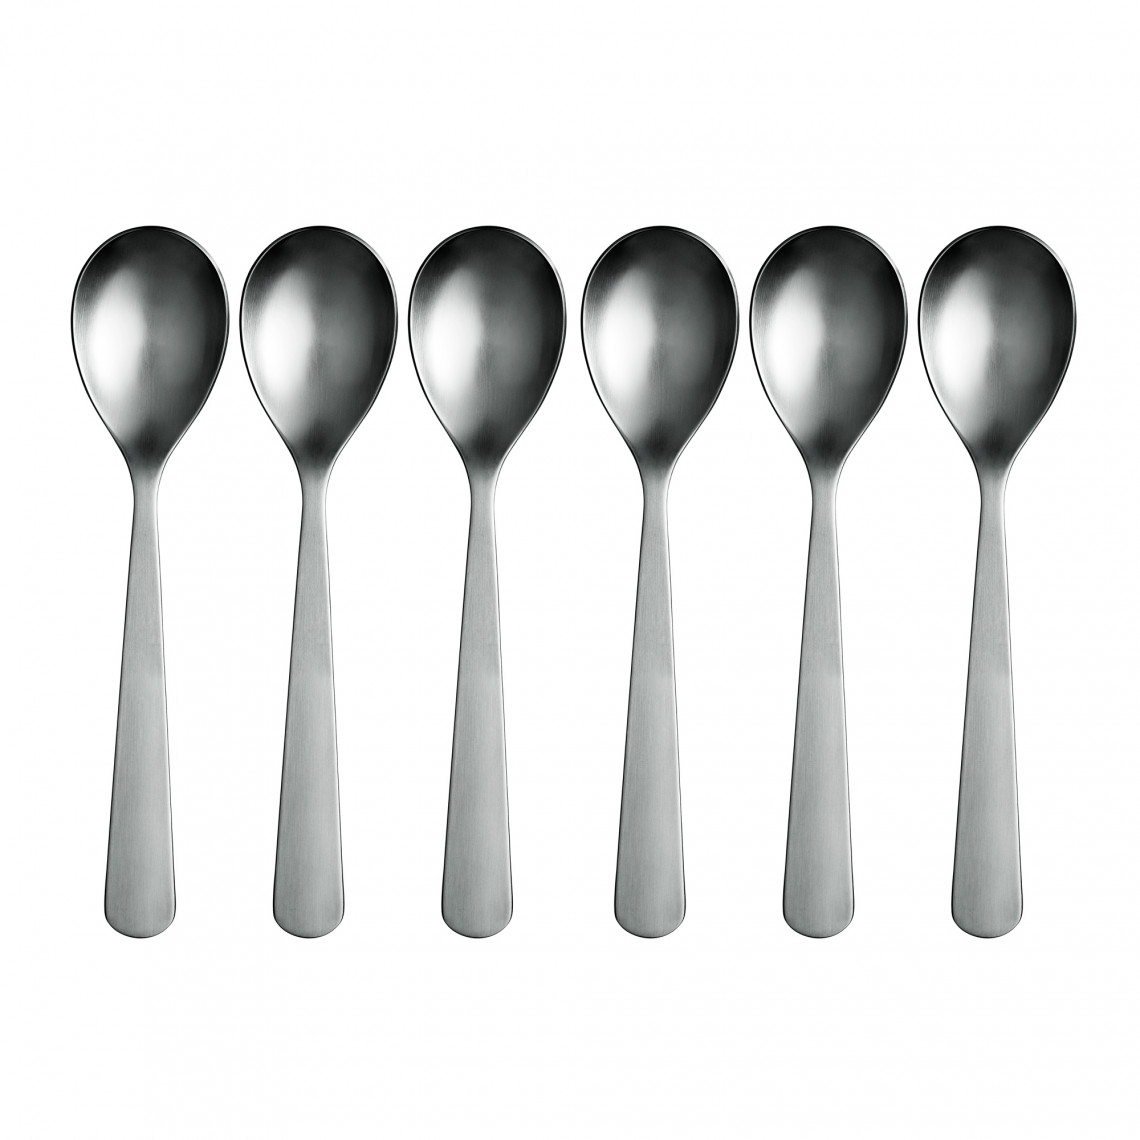 Skedar Normann Cutlery Spoons - 6 pack